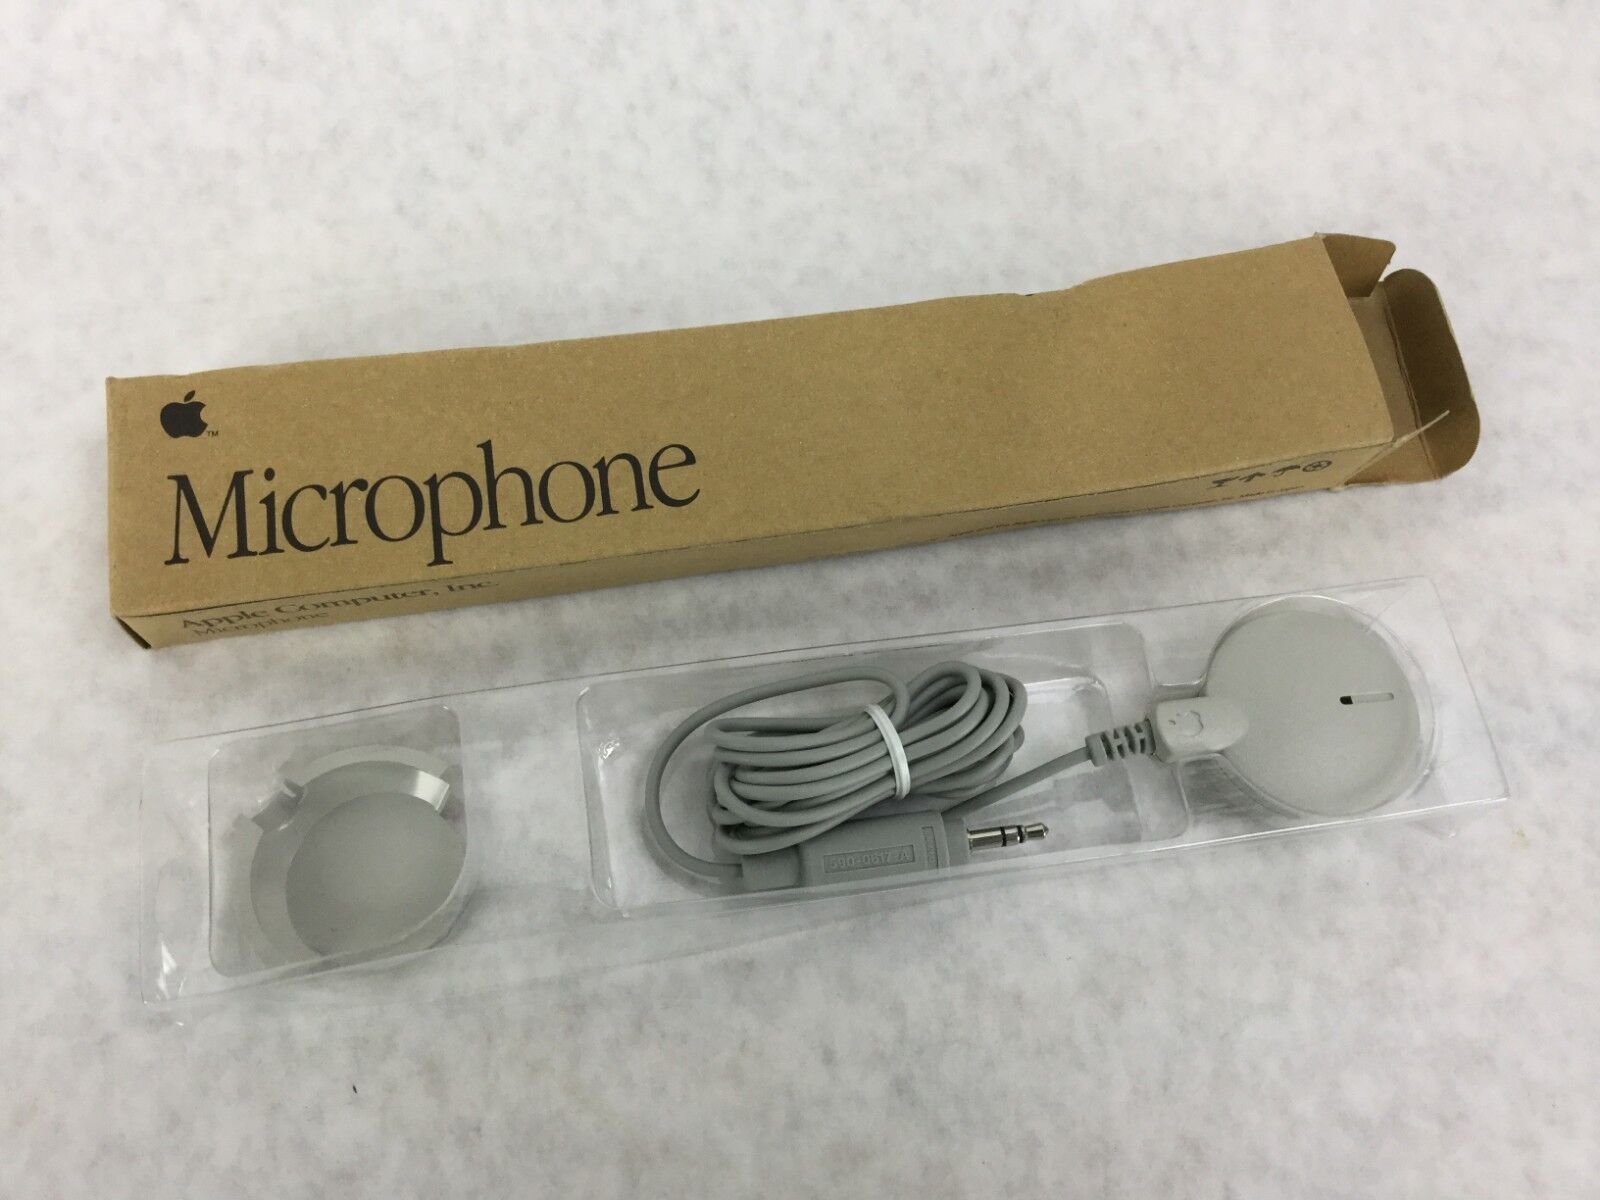 Apple Microphone  590-0617-A   New in Original Box